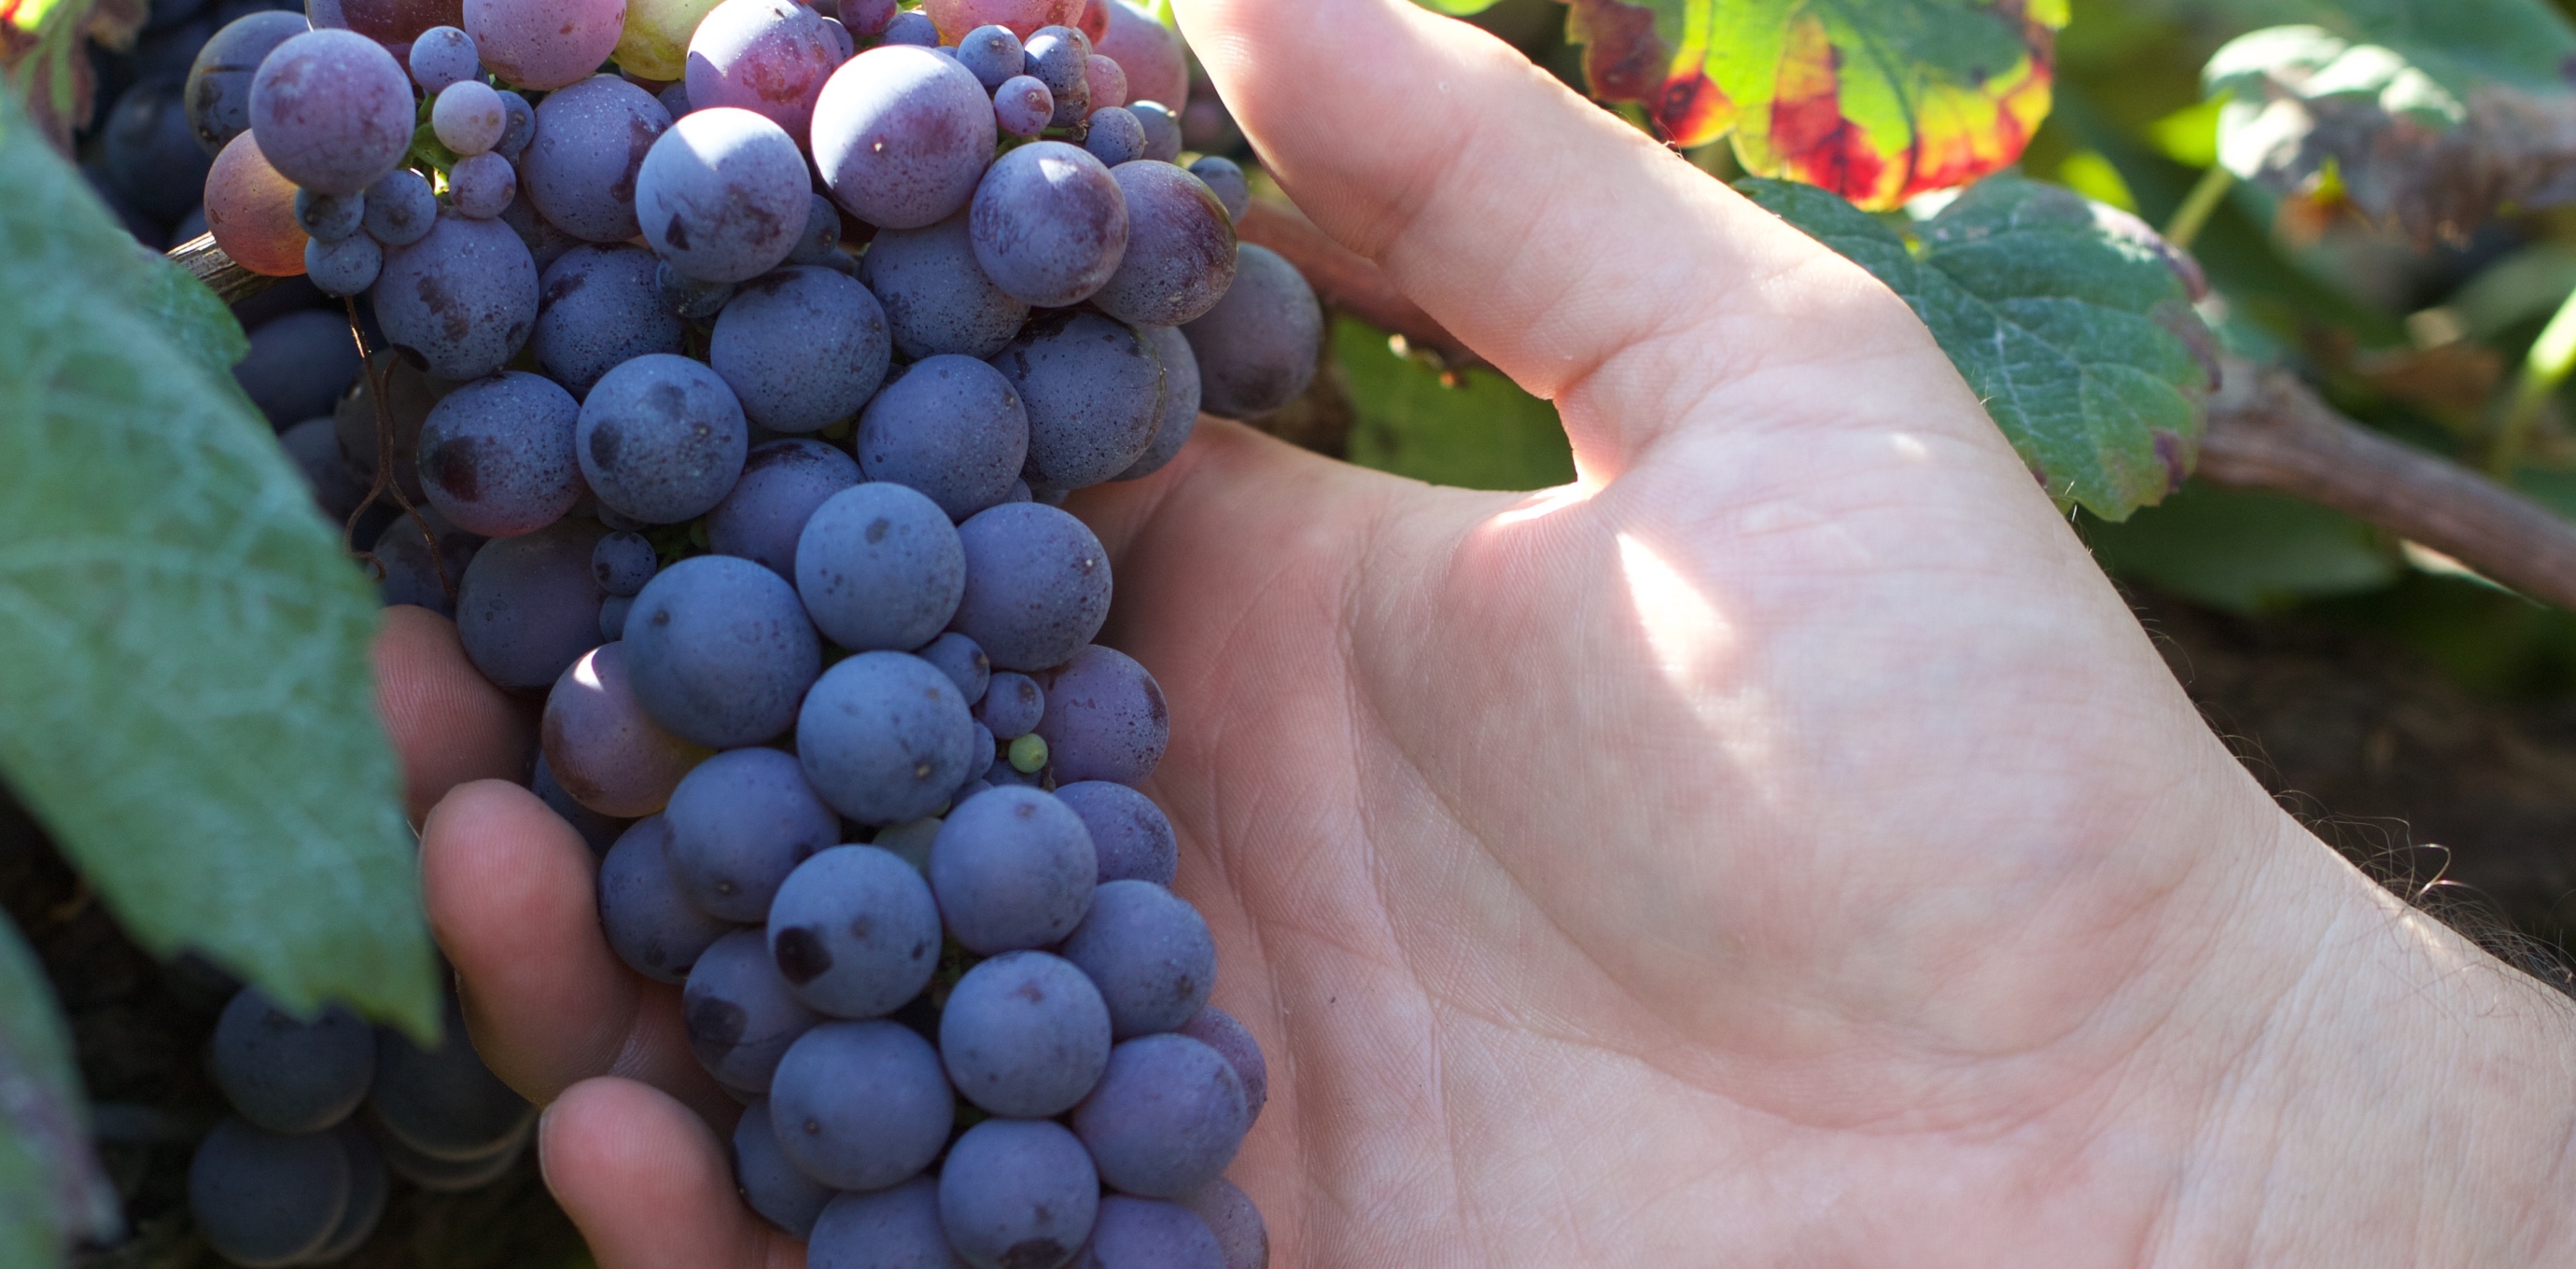 L'uva è al centro dei nostri interessi, da essa dipende non solo la qualità, ma soprattutto la personalità dei nostri vini.